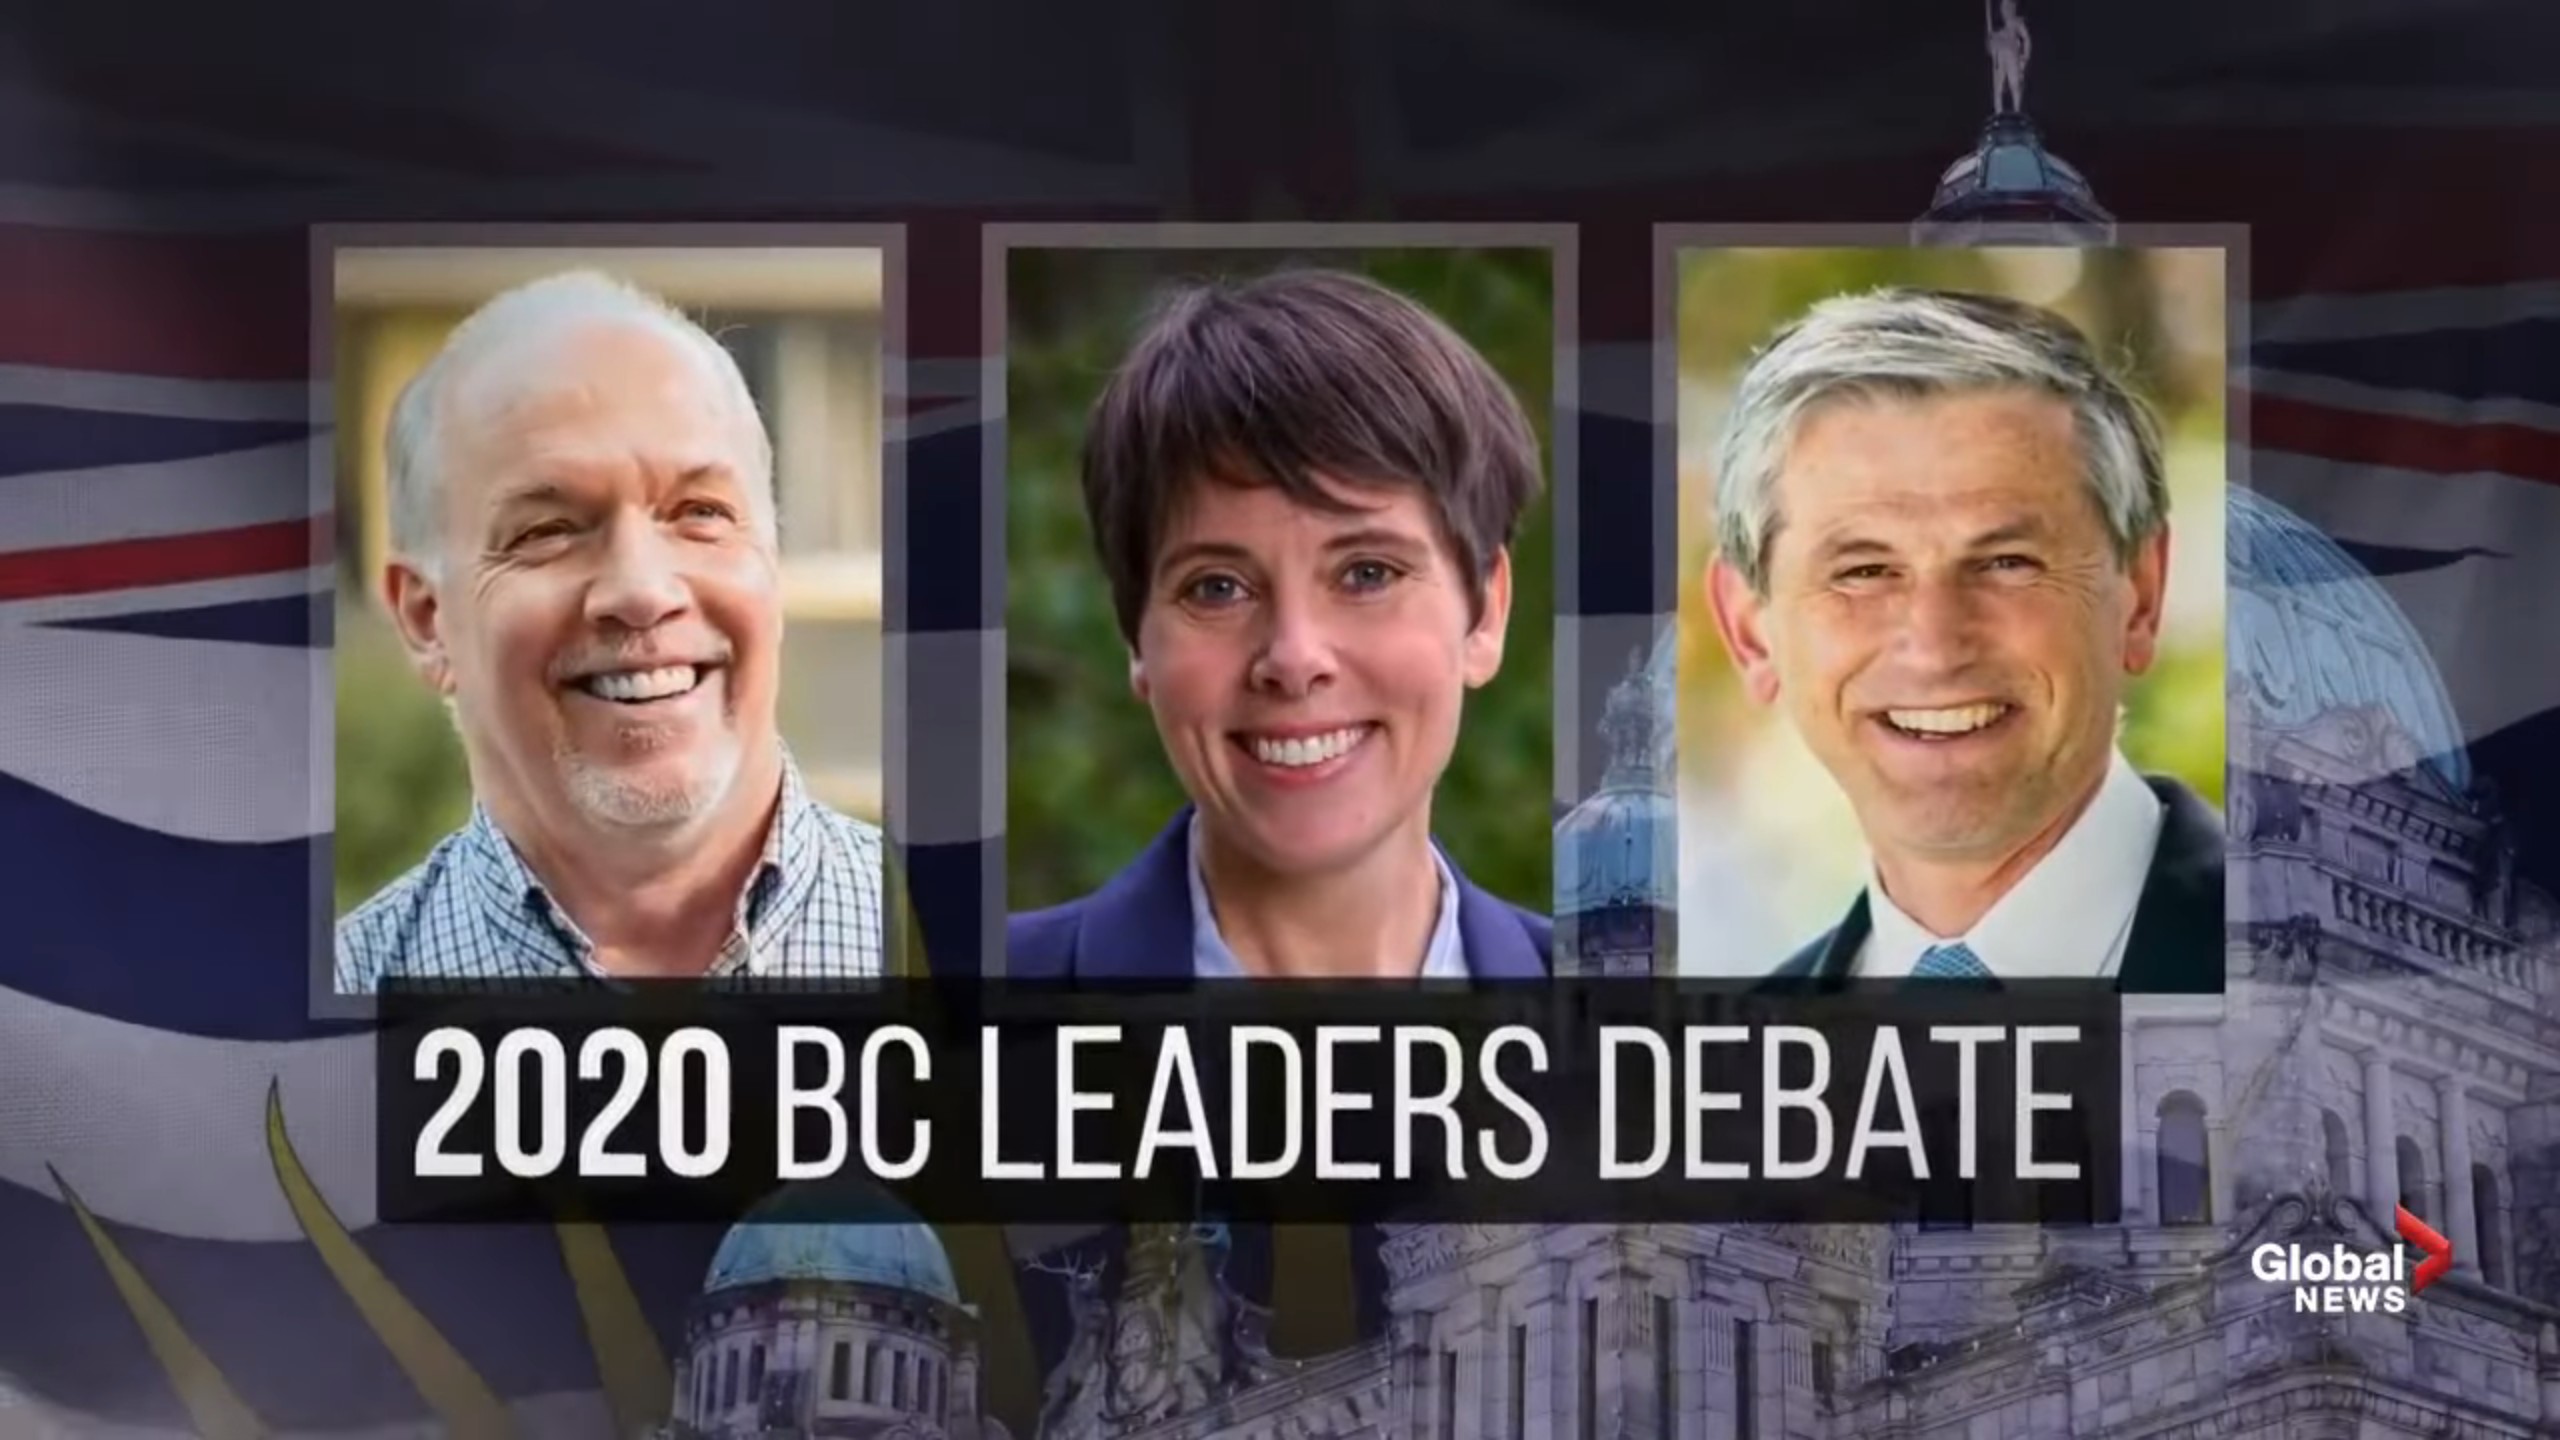 B.C. Leaders debate between John Horgan, Andrew Wilkinson, Sonia Furstenau